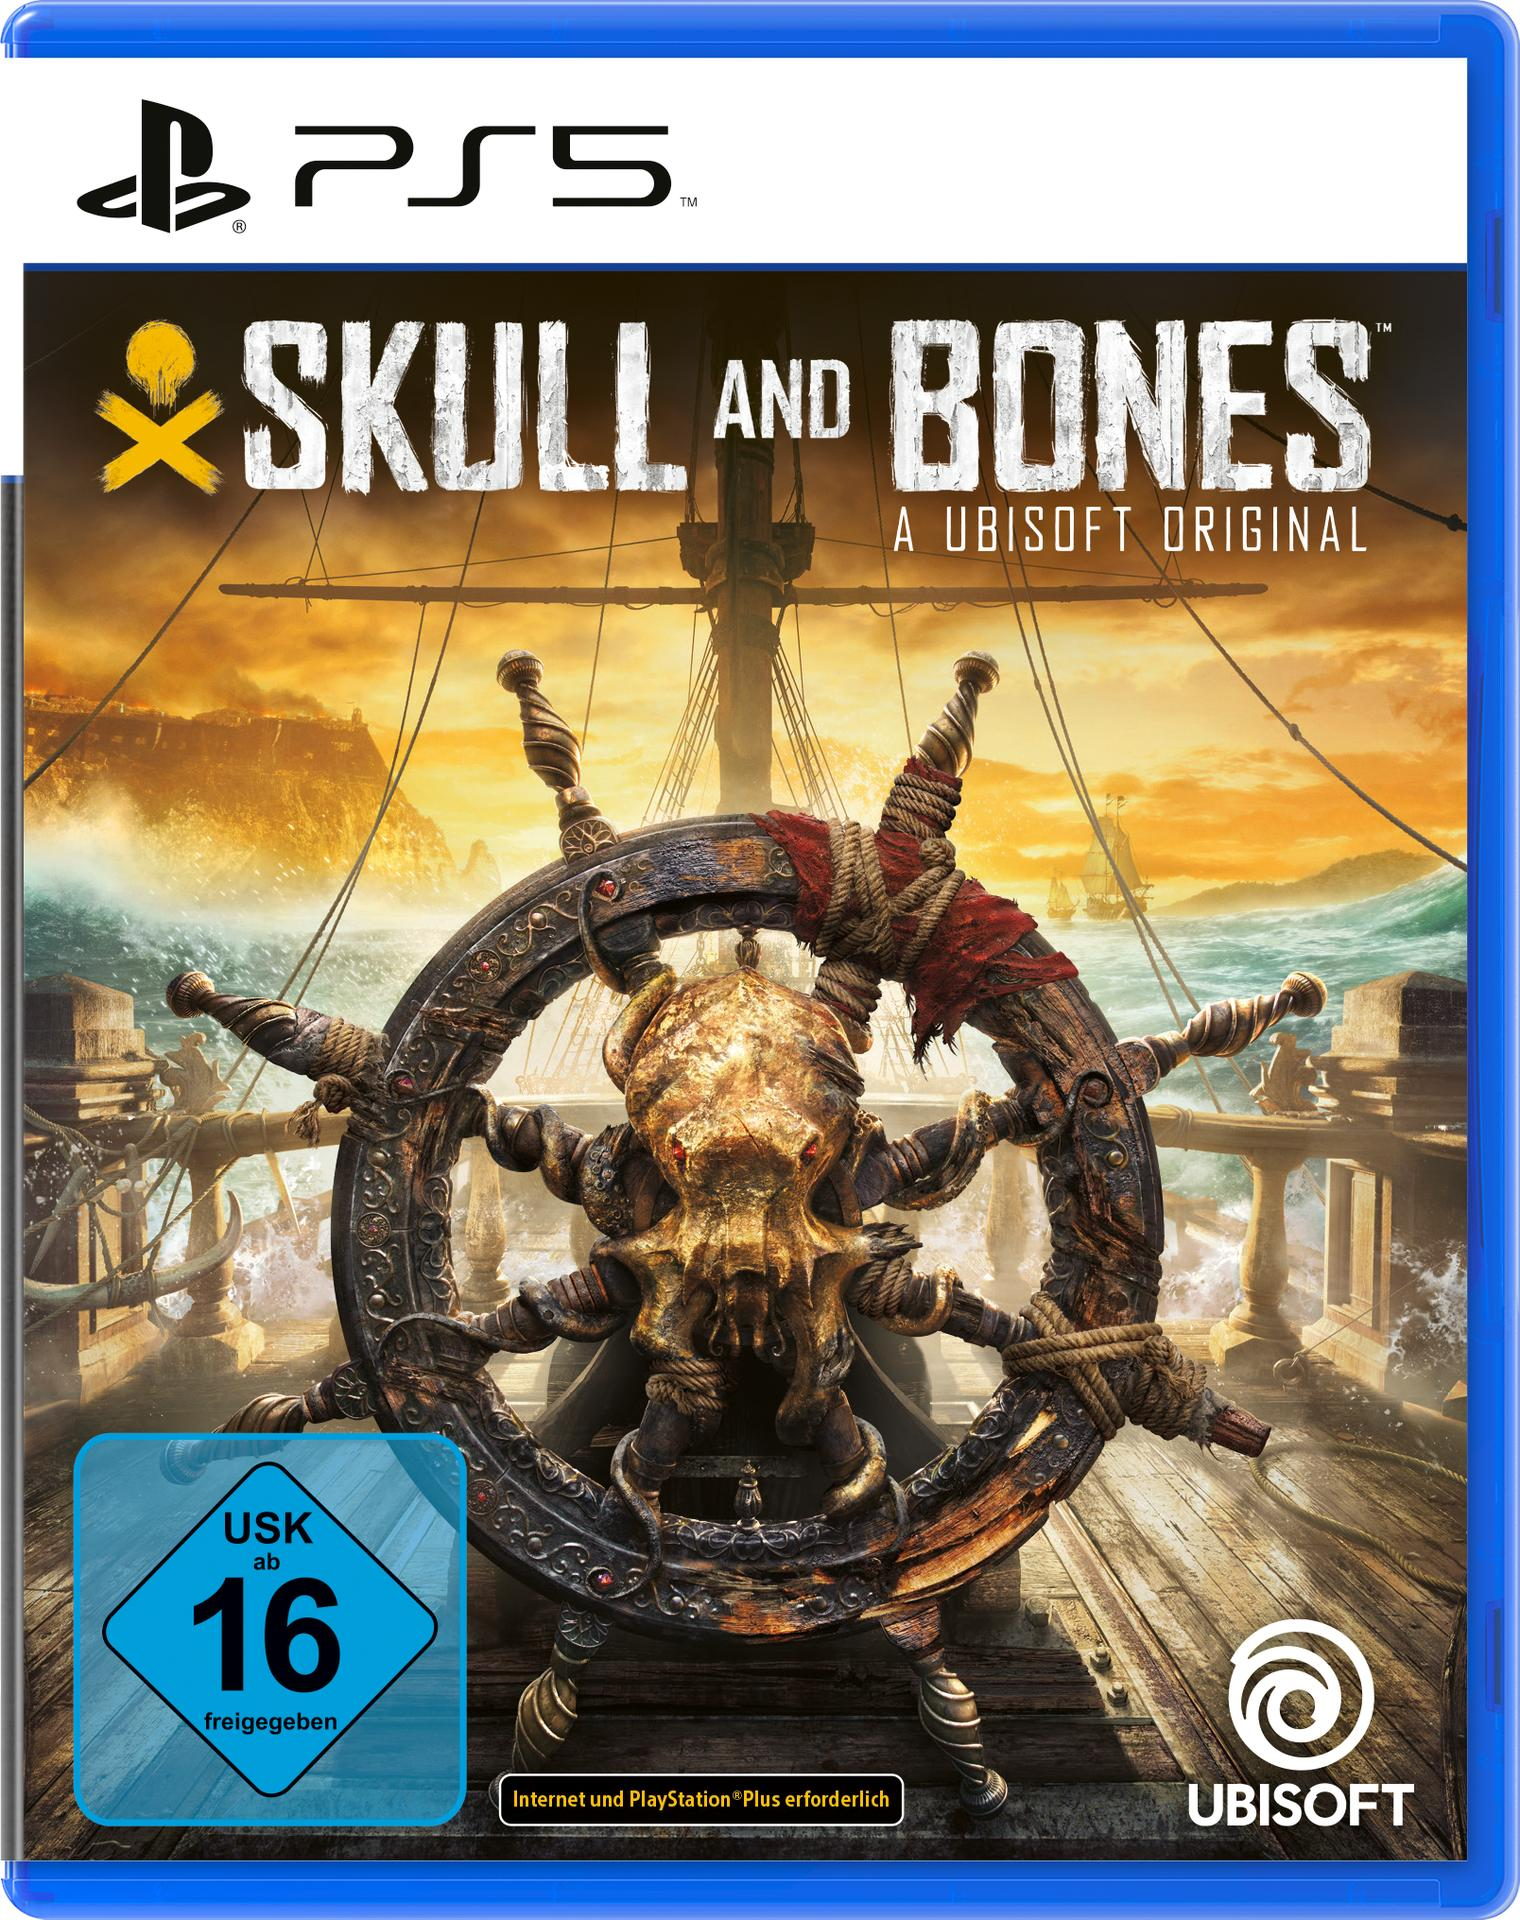 Bones [PlayStation 5] and Skull -